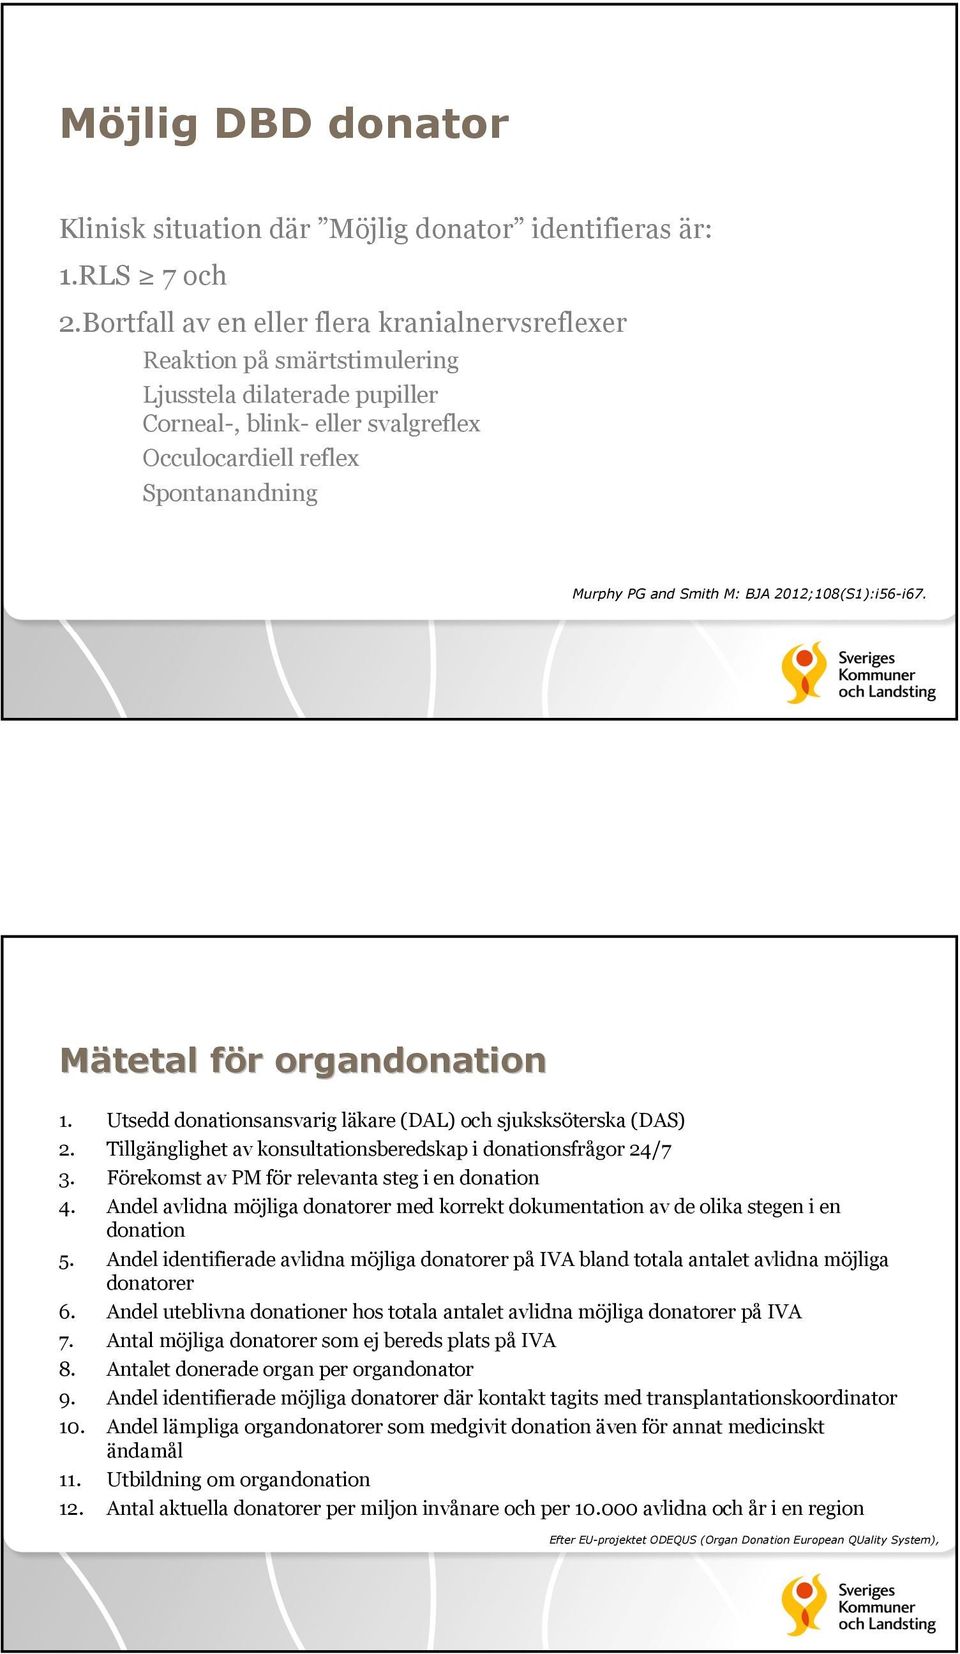 M: BJA 2012;108(S1):i56-i67. Mätetal för f r organdonation 1. Utsedd donationsansvarig läkare (DAL) och sjuksksöterska (DAS) 2. Tillgänglighet av konsultationsberedskap i donationsfrågor 24/7 3.